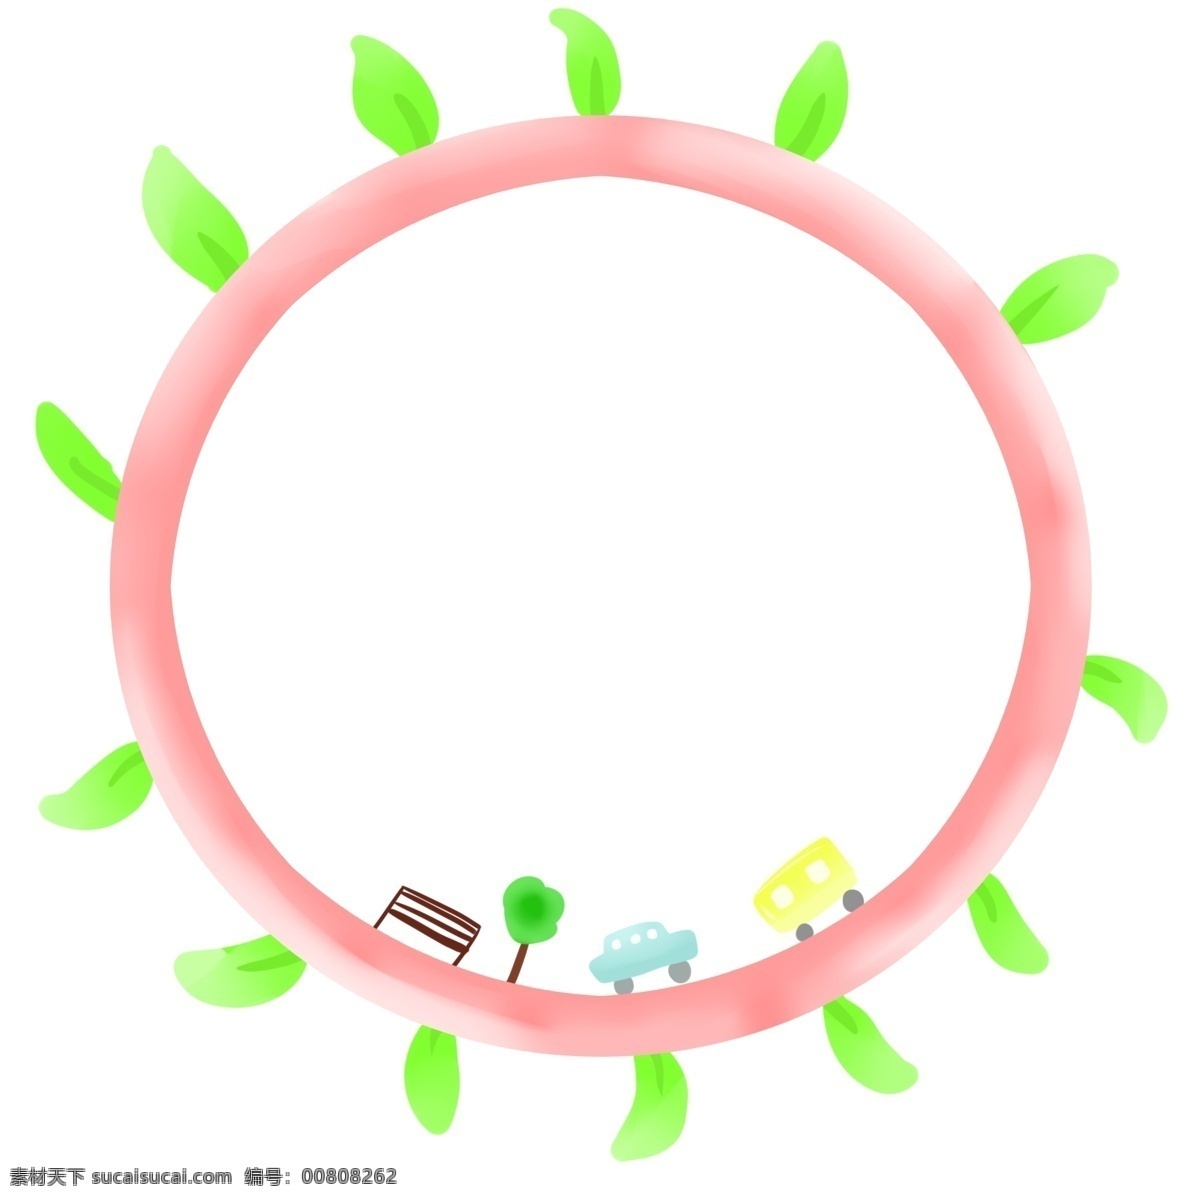 春季 圆形 粉色 边框 绿色花边 粉色圆圈边框 黄色汽车 绿色汽车 绿色小树 深色板凳 花边边框 春天的边框